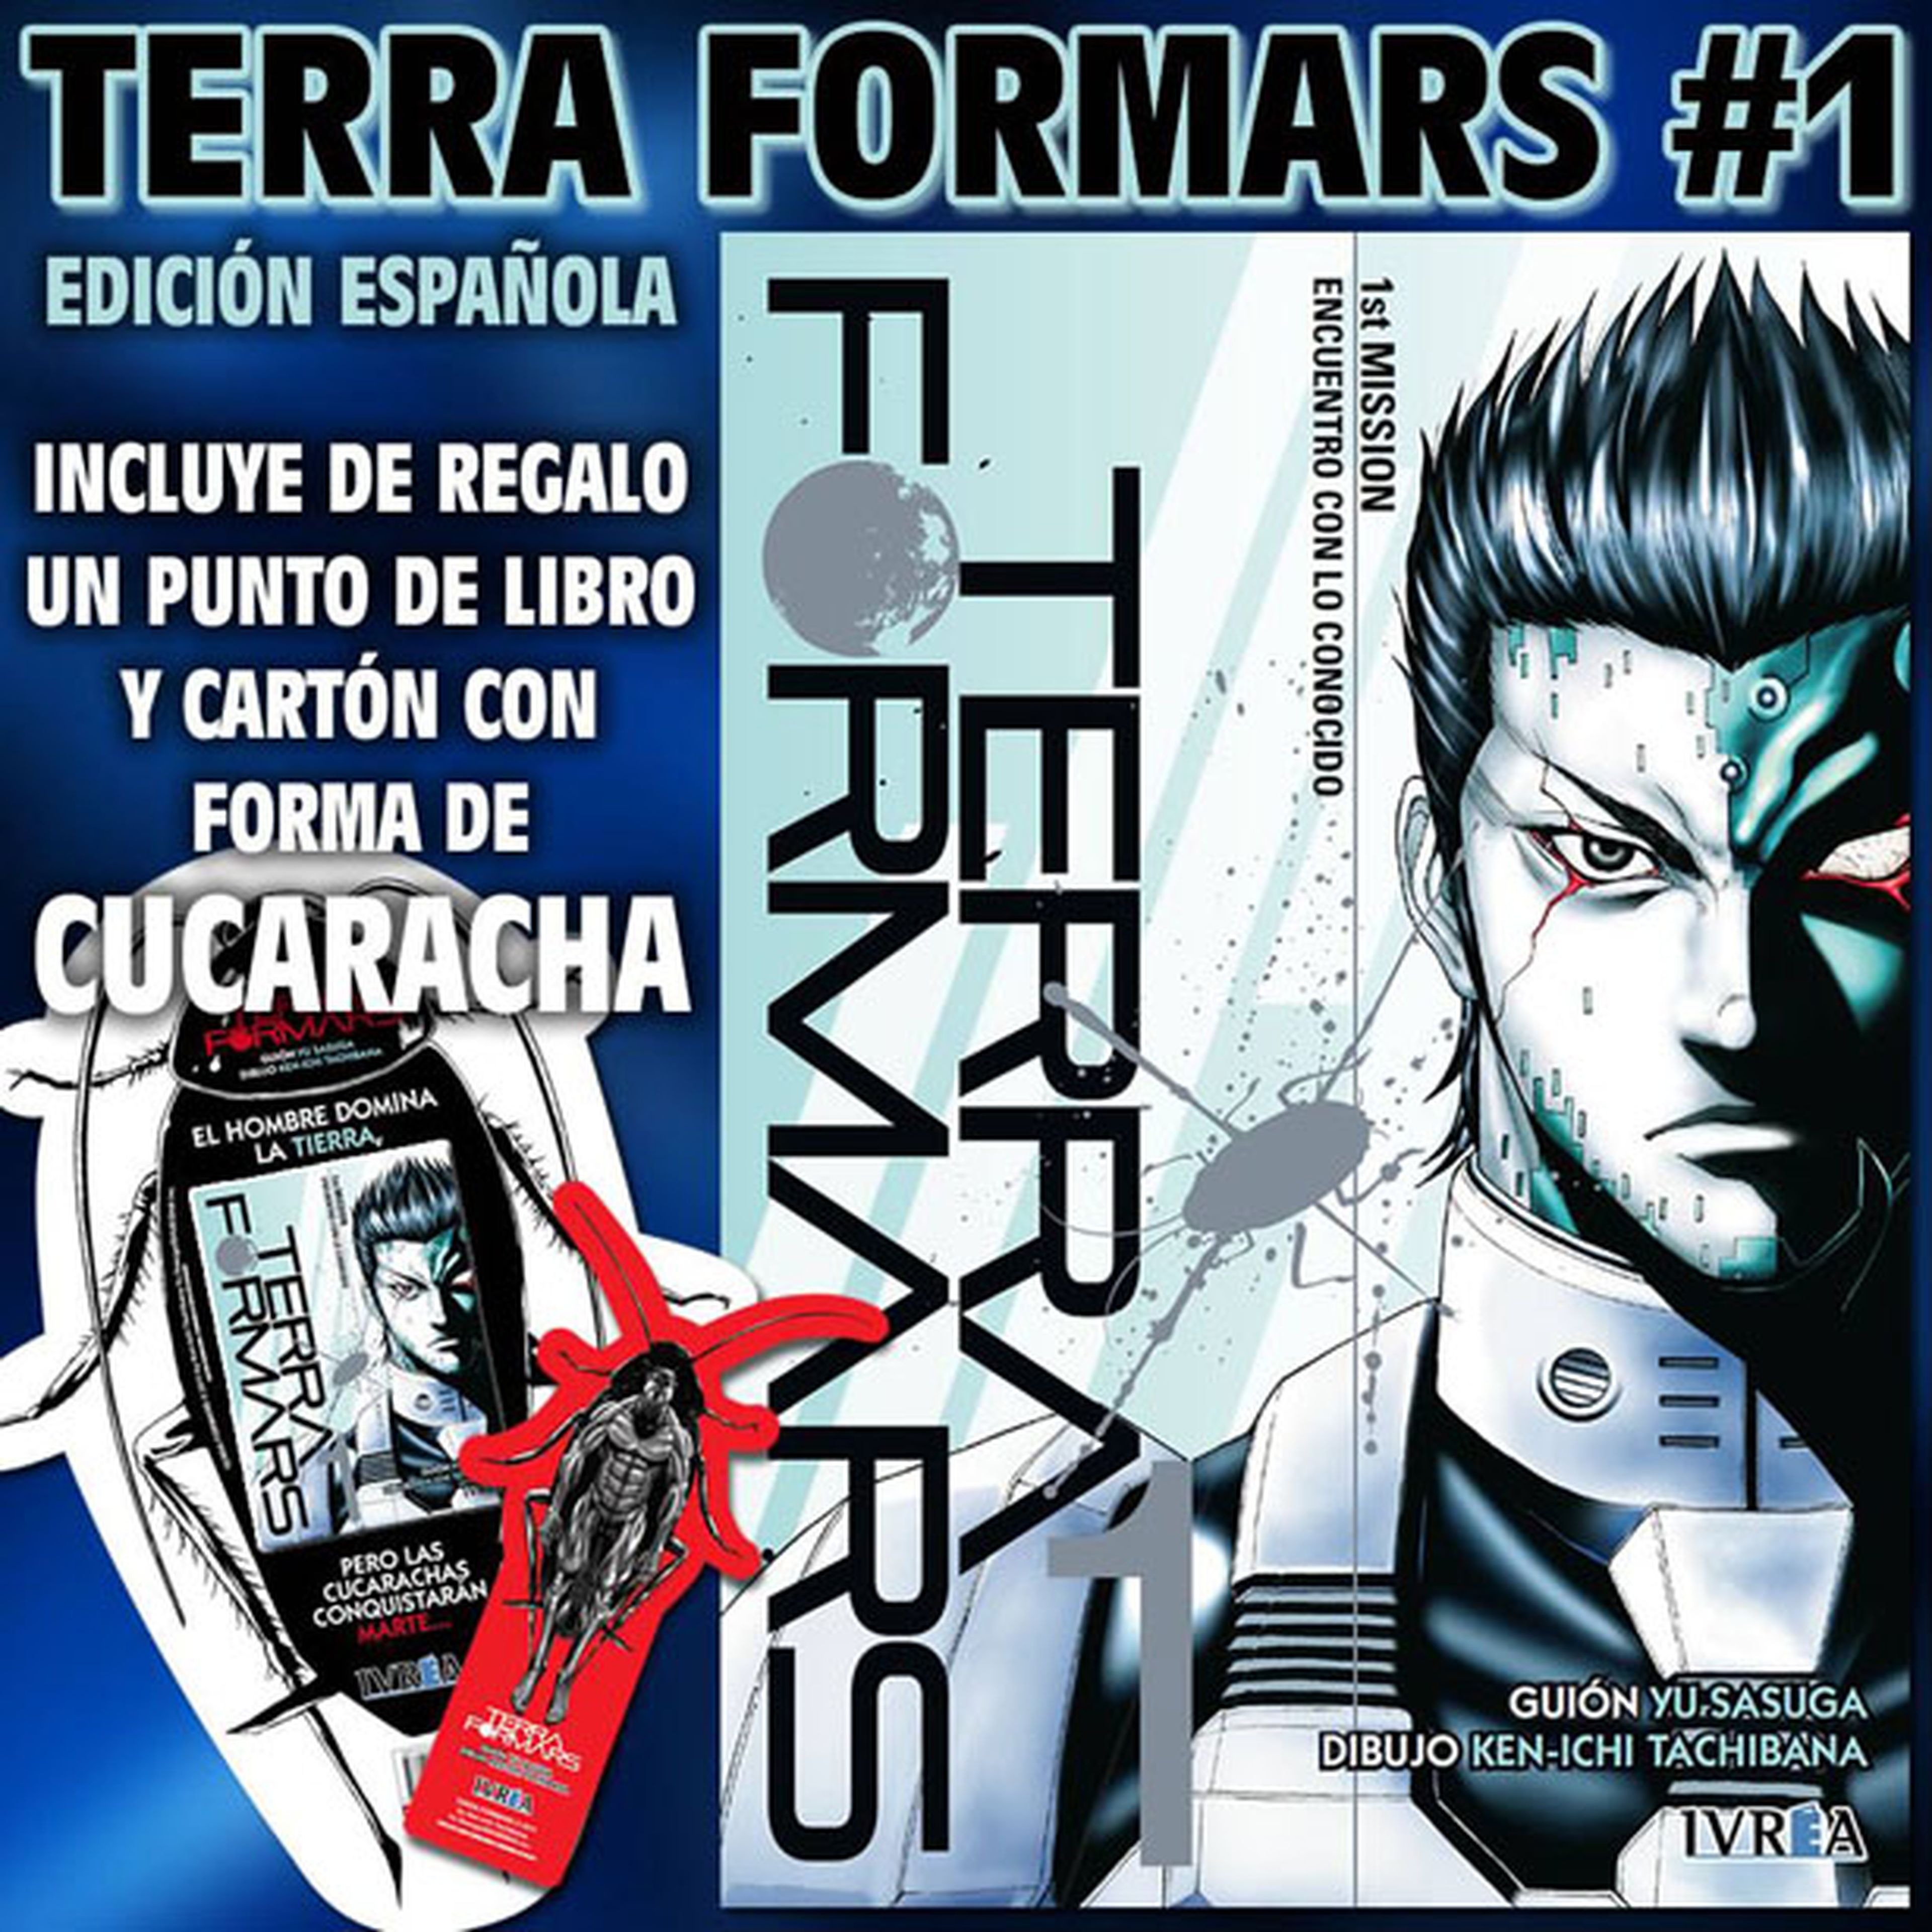 Edición española de Terra Formars